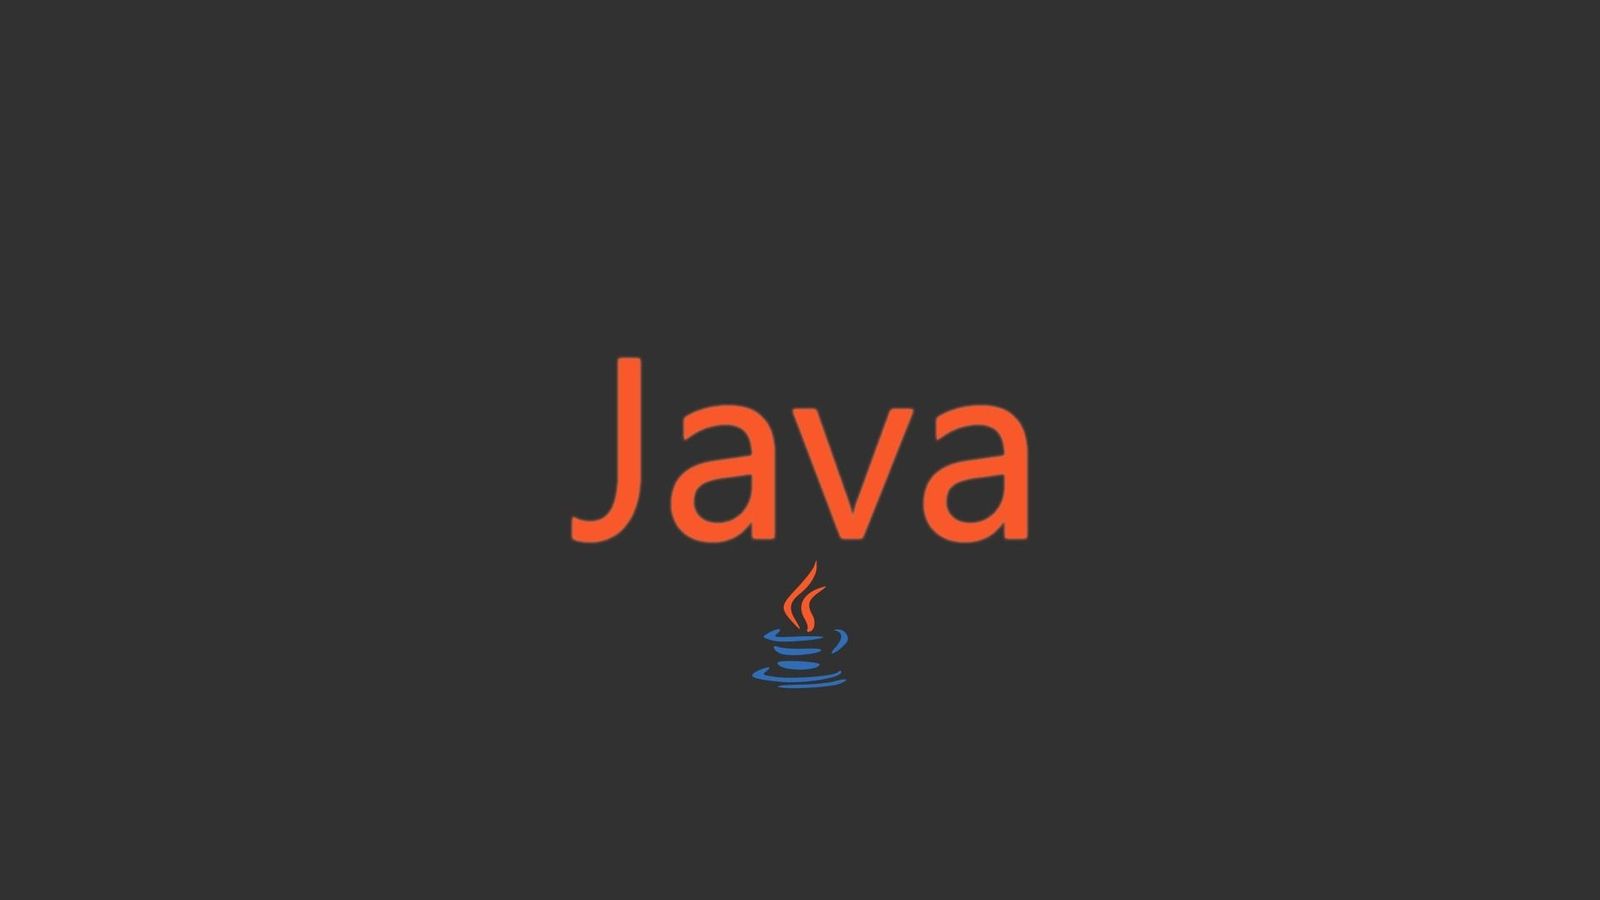 オーバーフロー発生時の対処方法について《Java,Android Studio》 